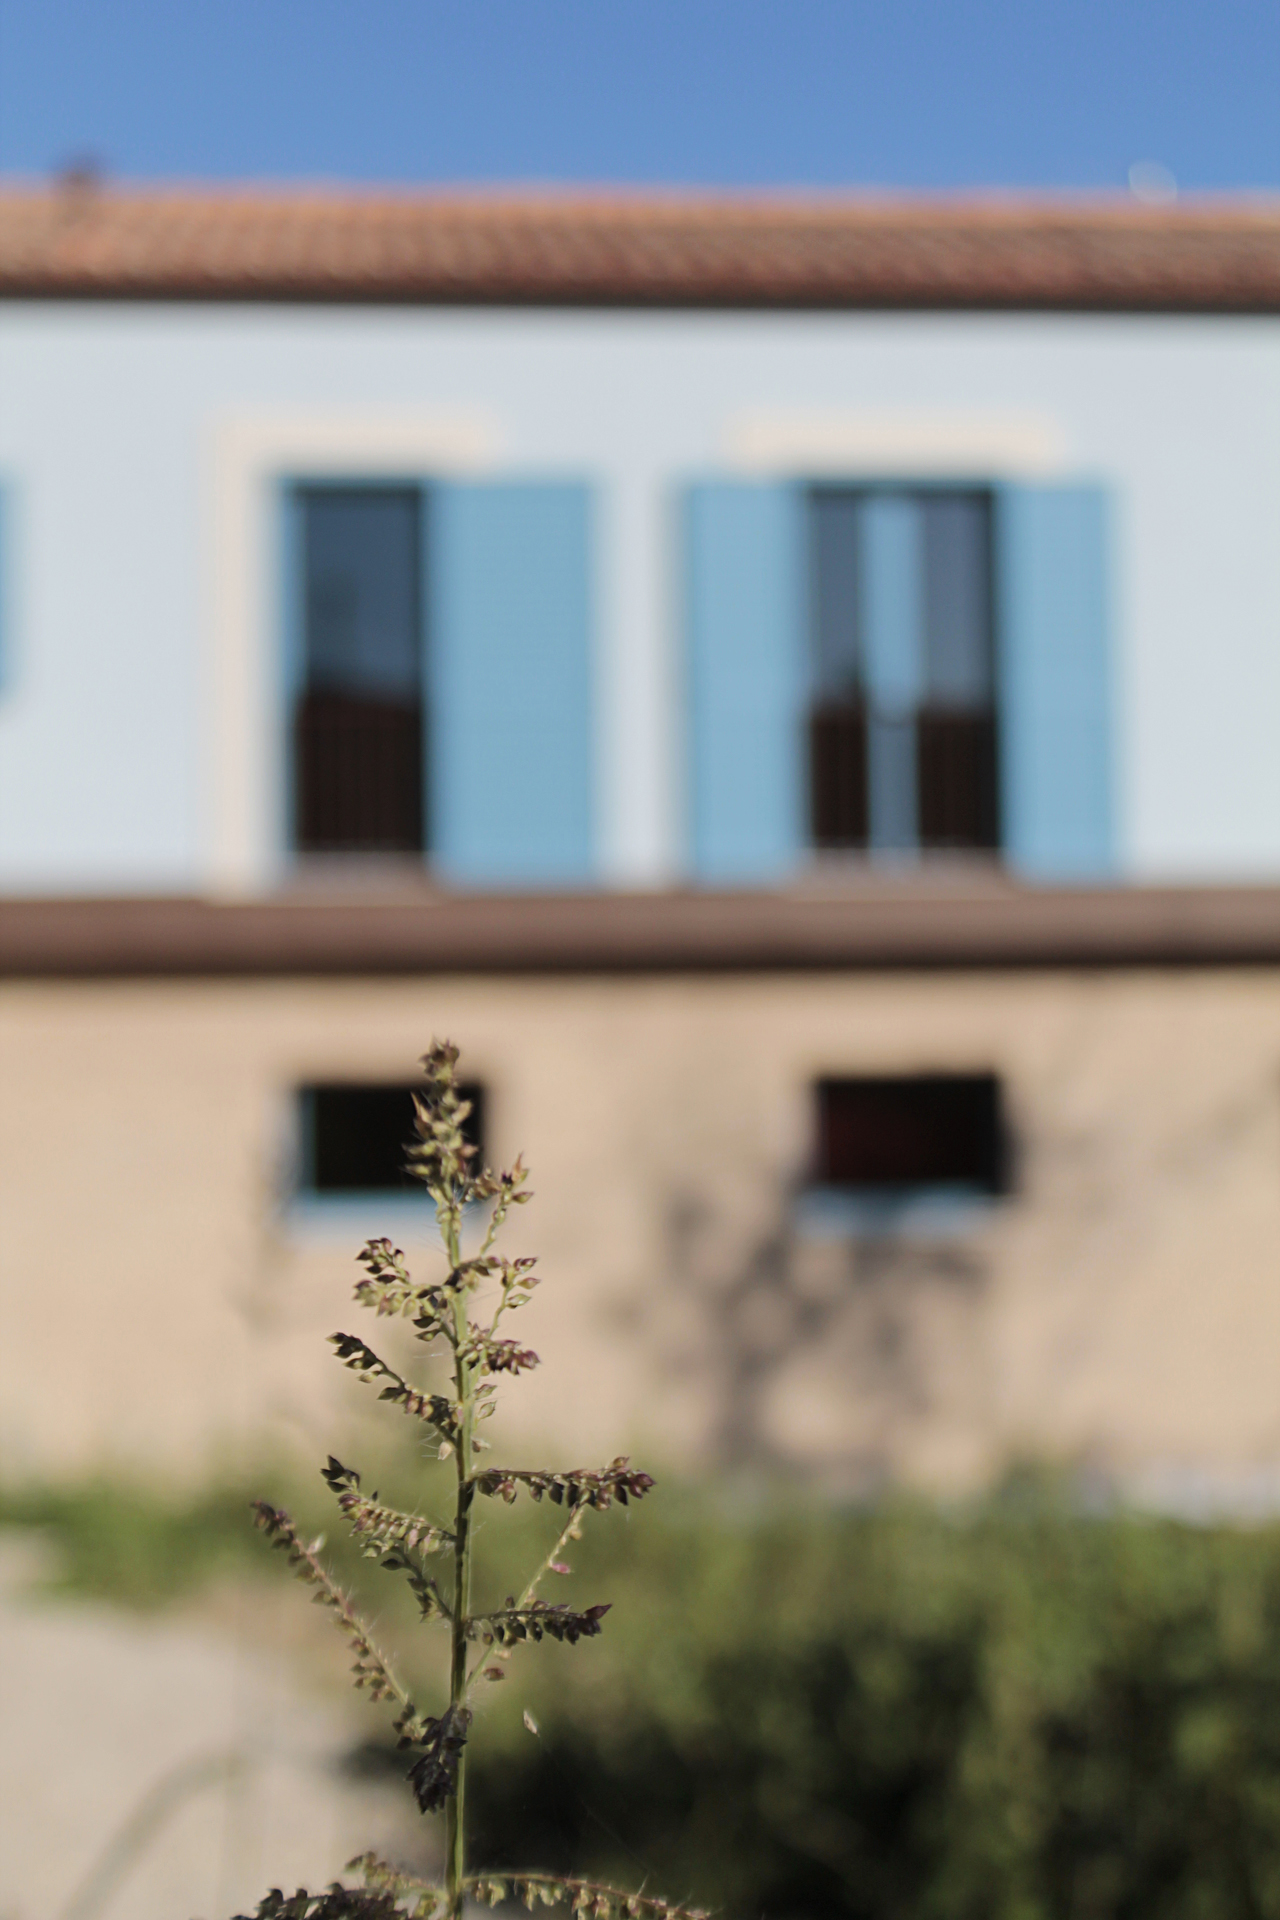 Casa di campagna - esterno - dettaglio del prospetto est con intonaco azzurro, rivestimento basamentale in mattoni e dettagli in lamiera effetto acciaio corten - mattina di sole